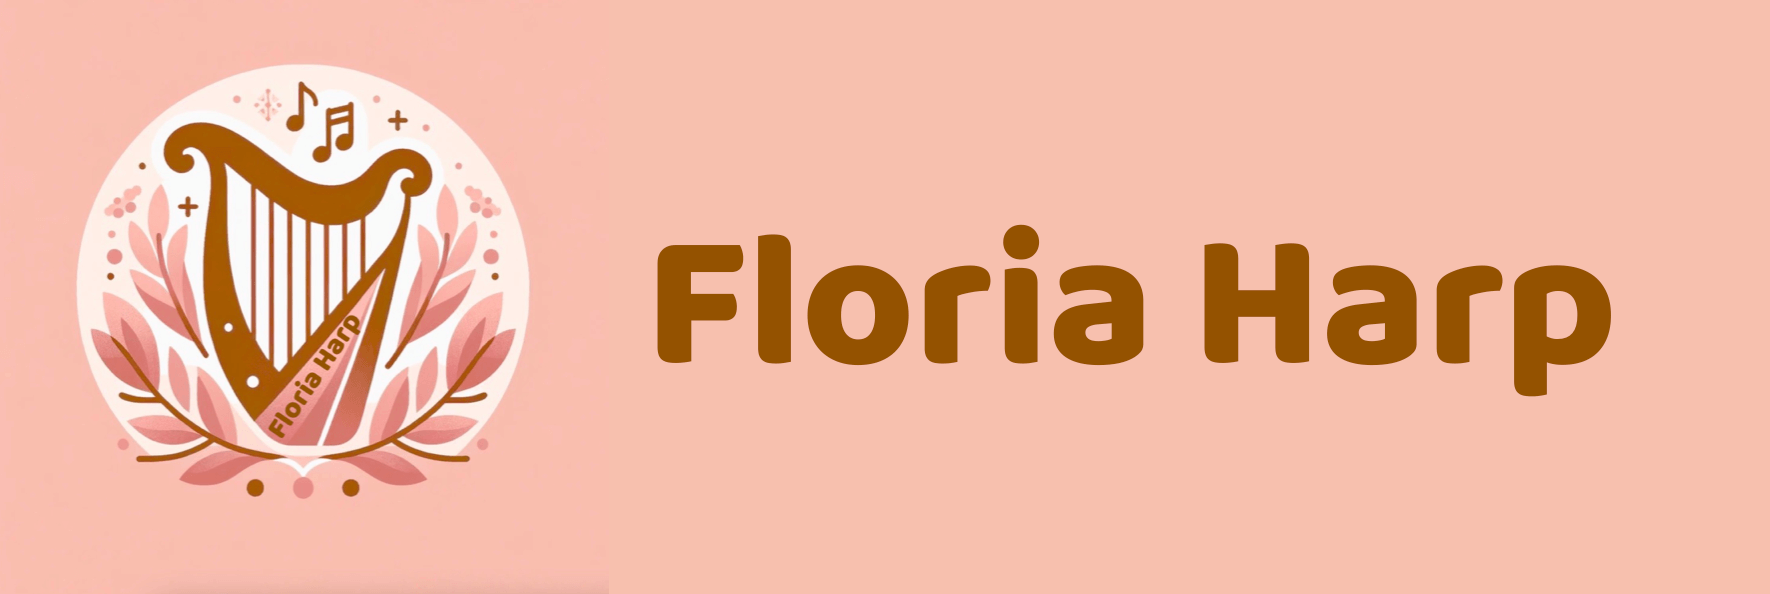 Floria Harp